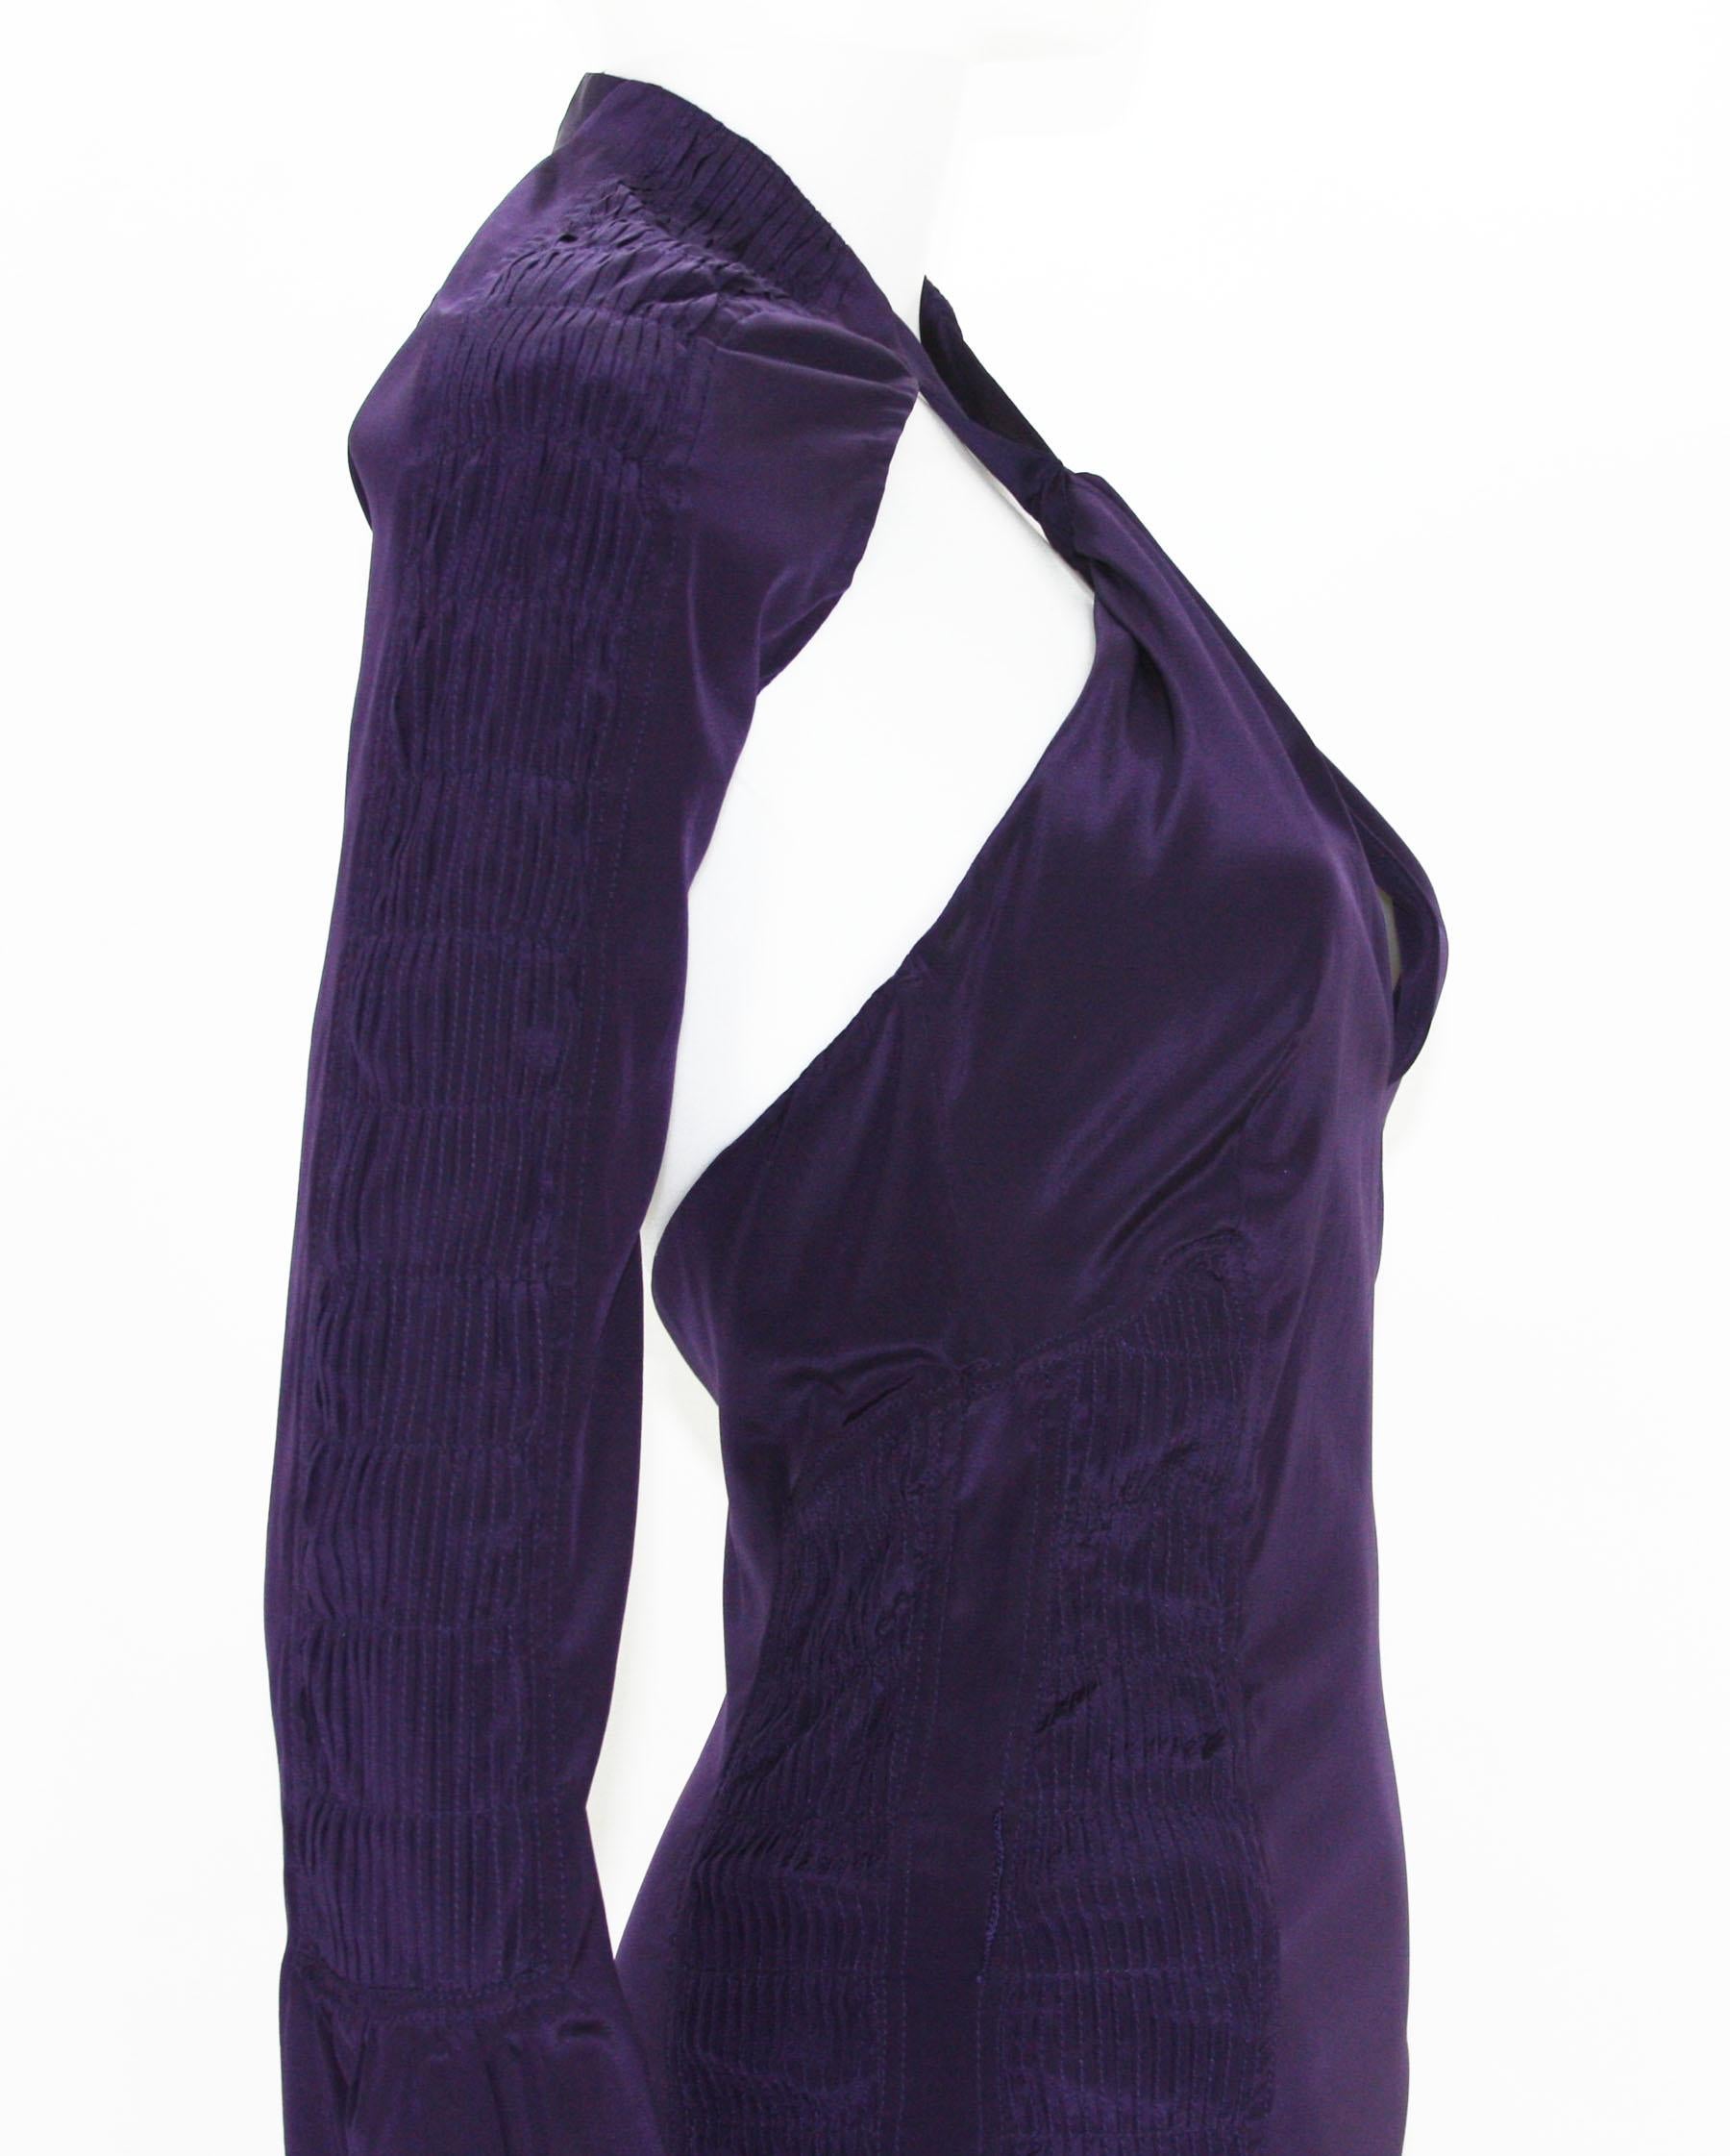 Tom Ford for Gucci, robe dos nu plongeant en soie violet profond, défilé P/É 2004, taille 38 et 44, neuve en vente 2